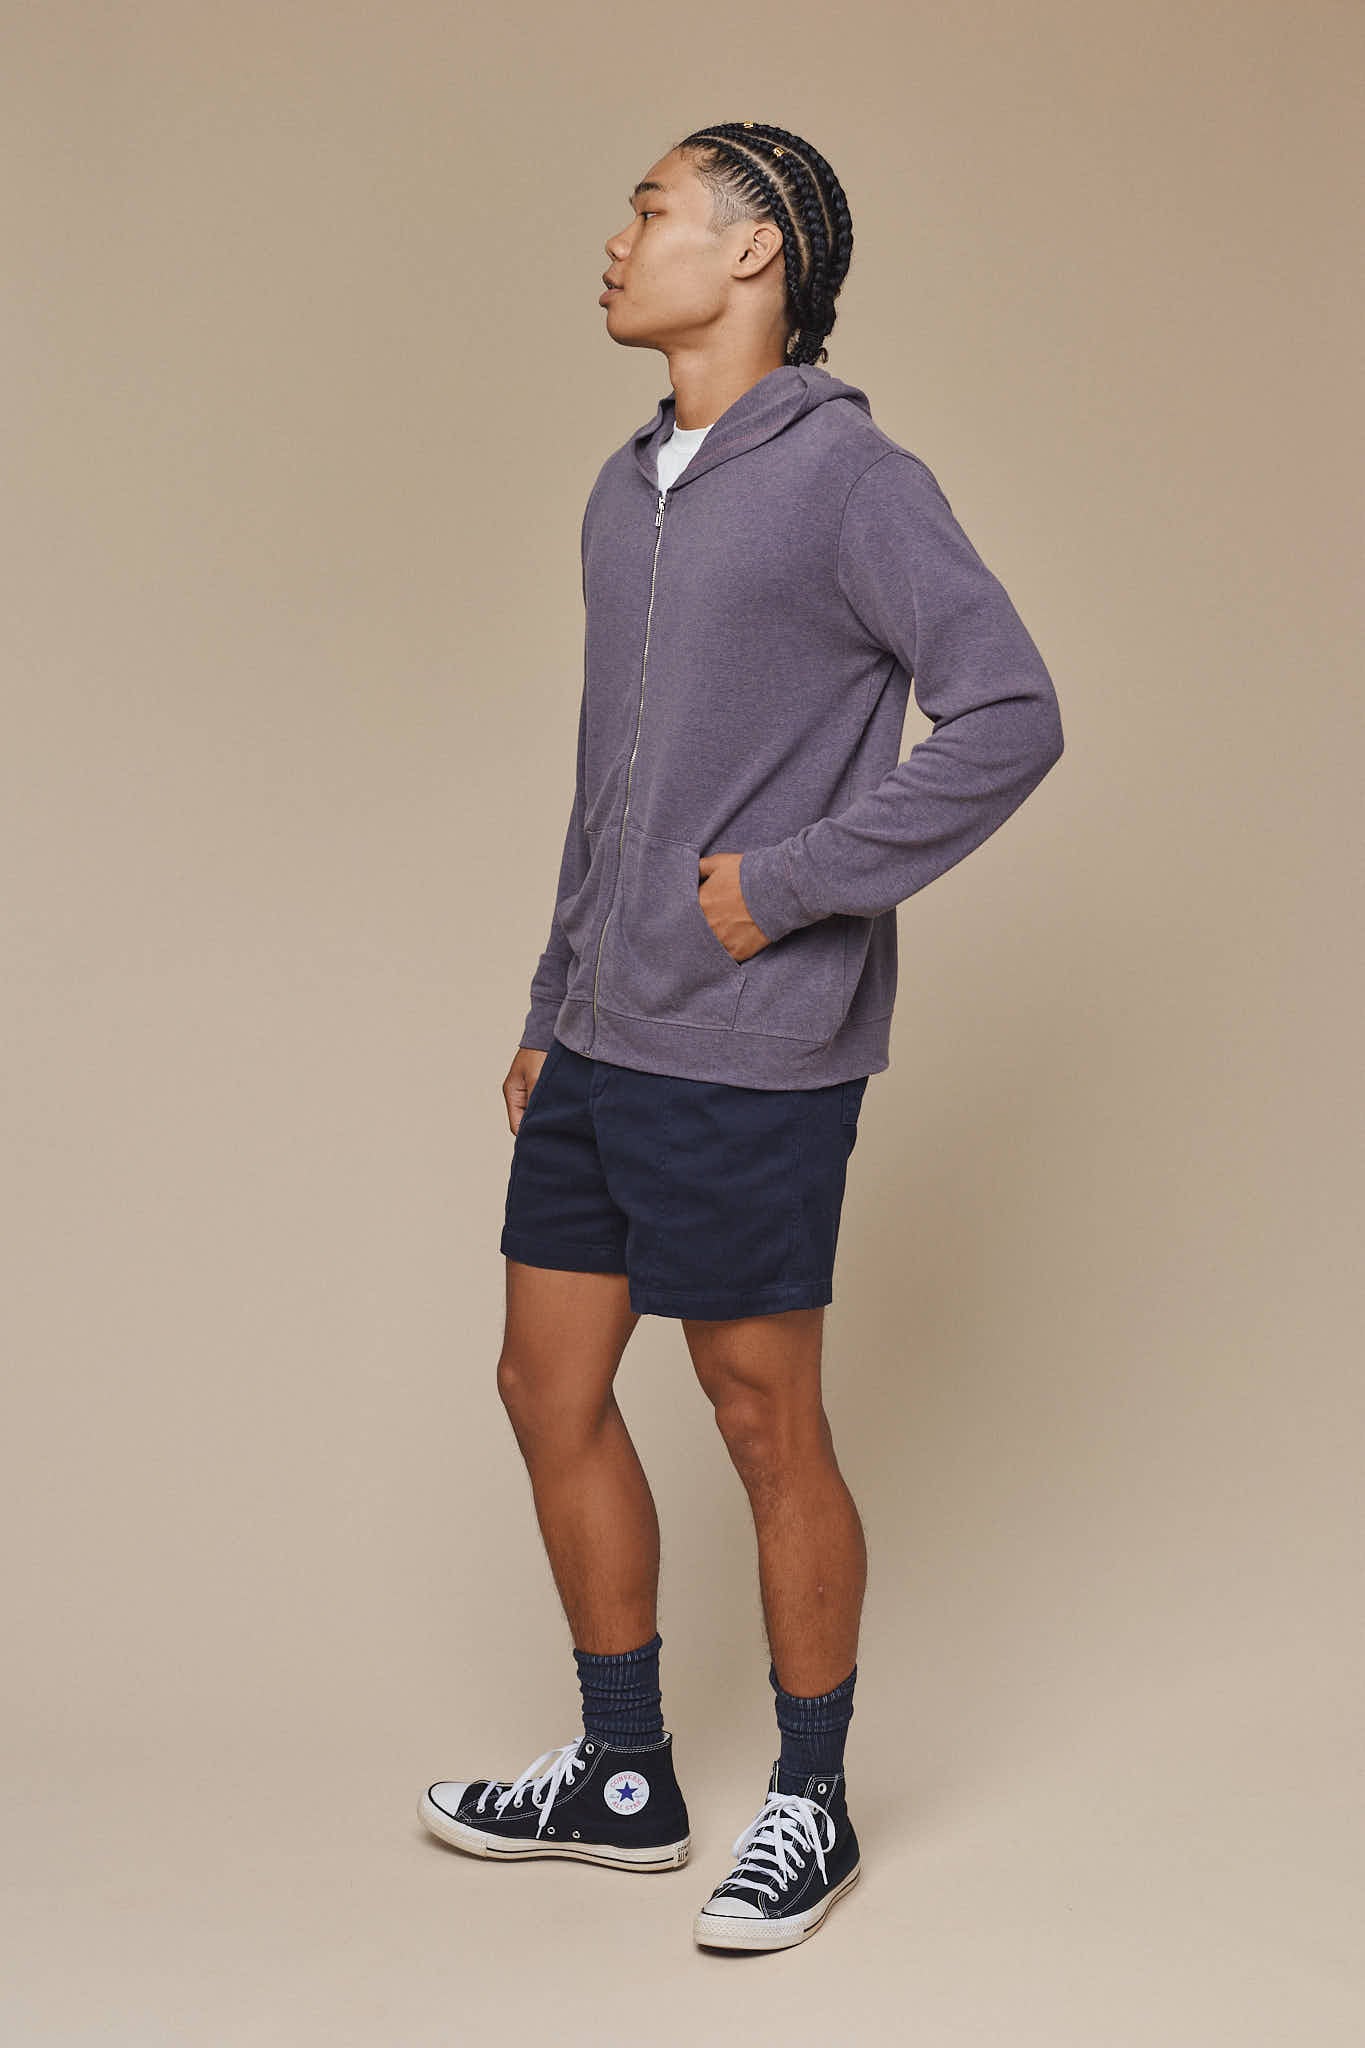 Newport Hemp Wool Sweatshirt | Jungmaven Hemp Clothing & Accessories / Color: